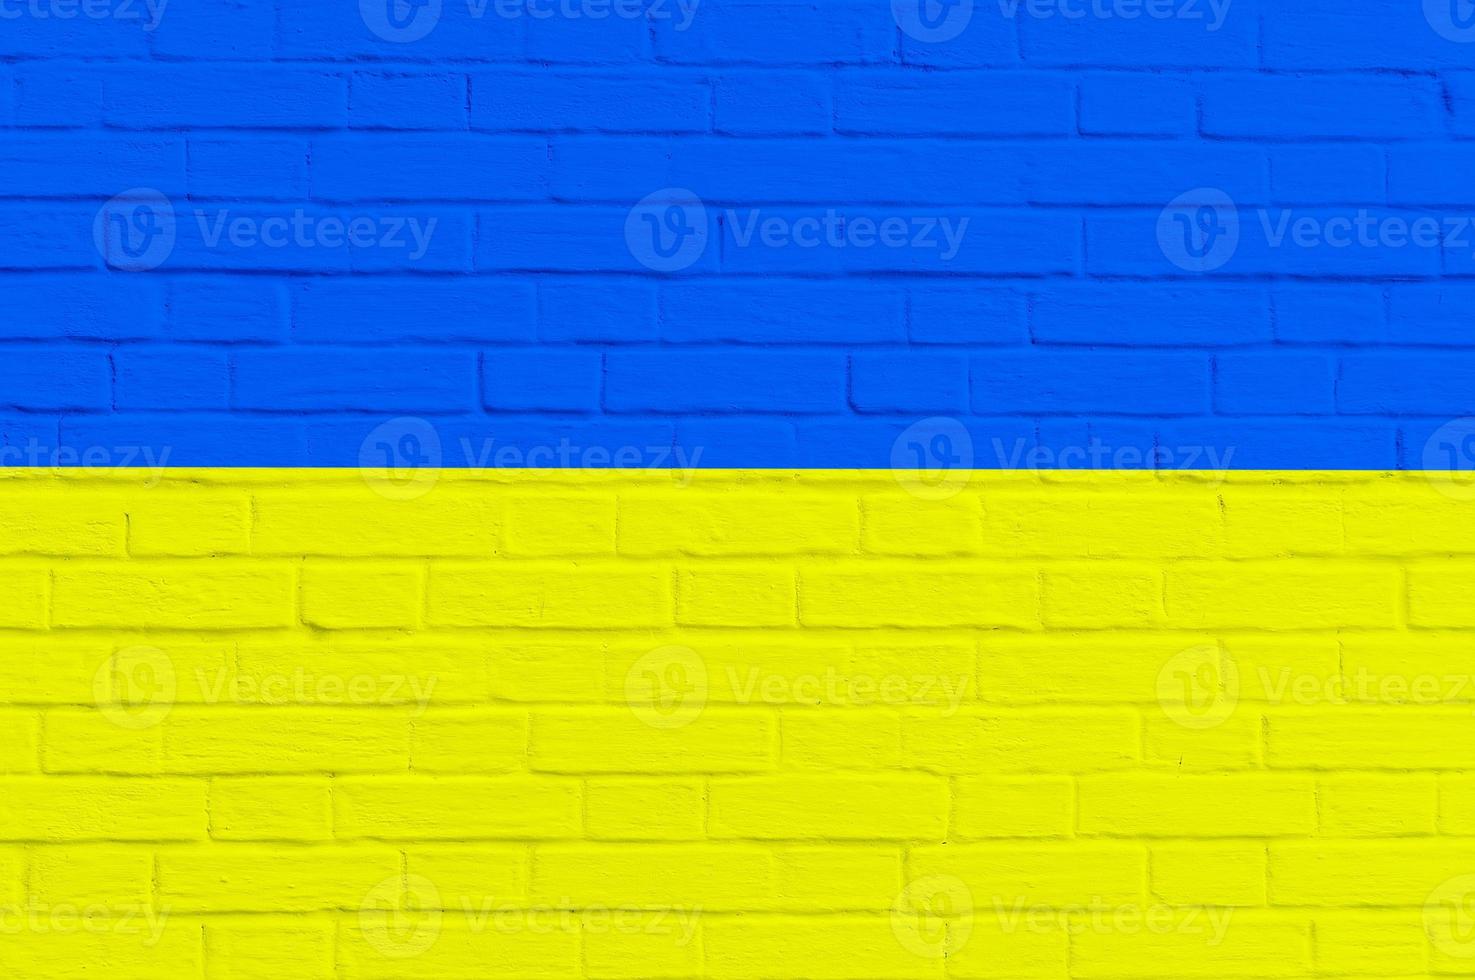 drapeau national de l'ukraine sur fond de mur de brique photo